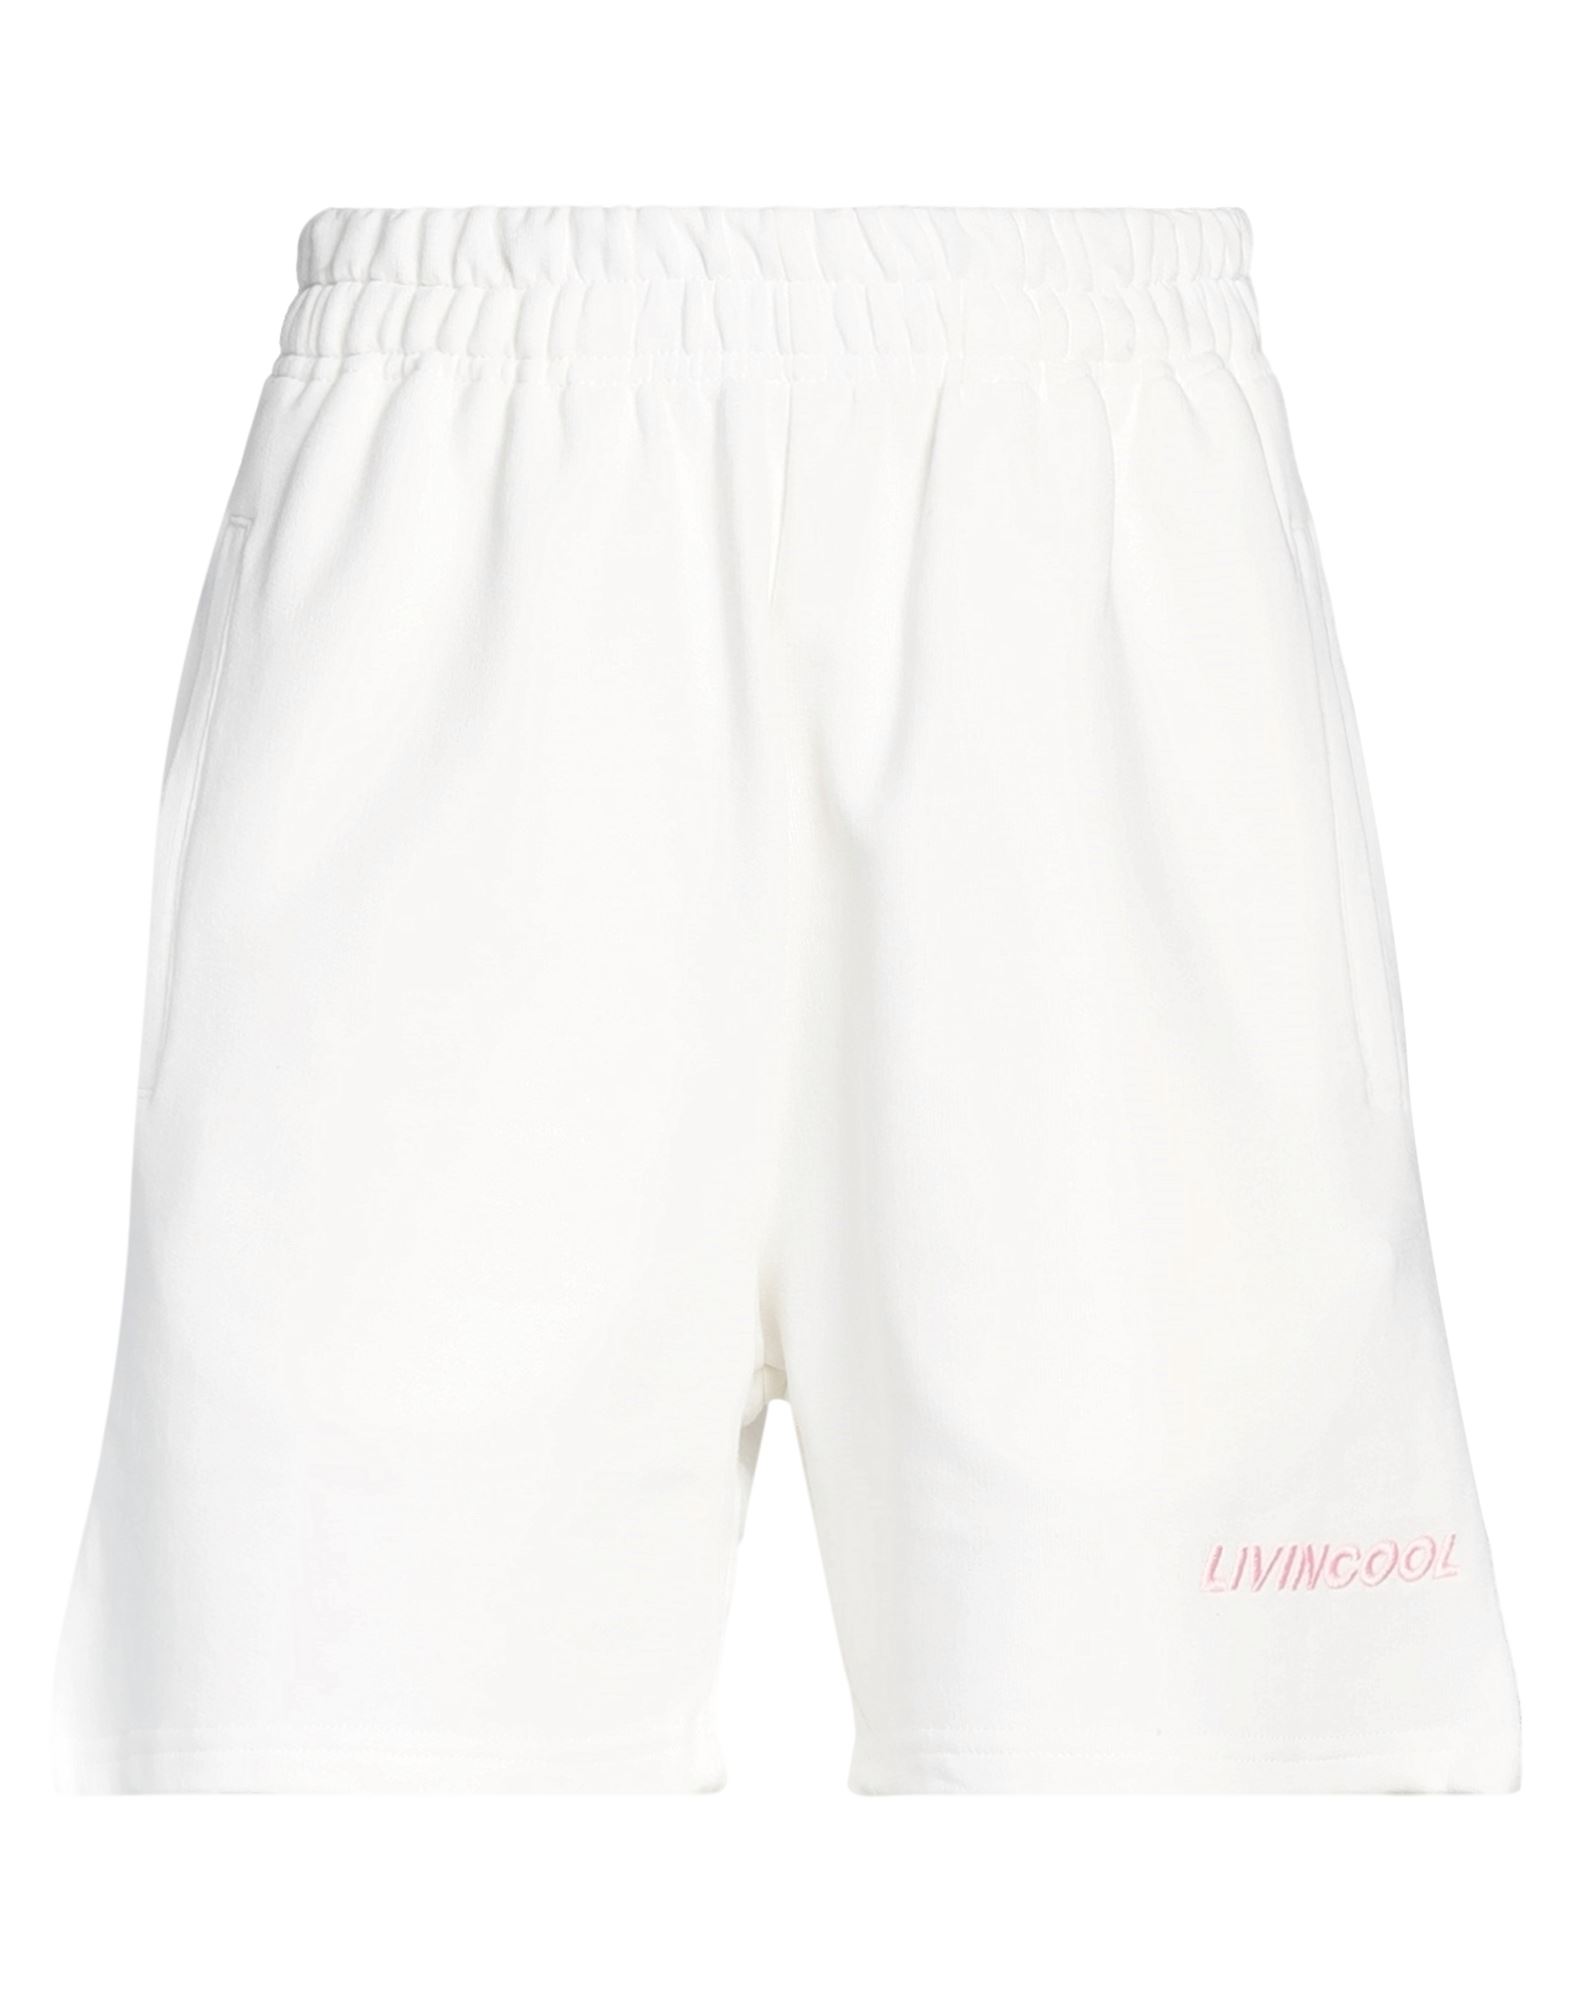 Livincool Woman Shorts & Bermuda Shorts White Size M Cotton